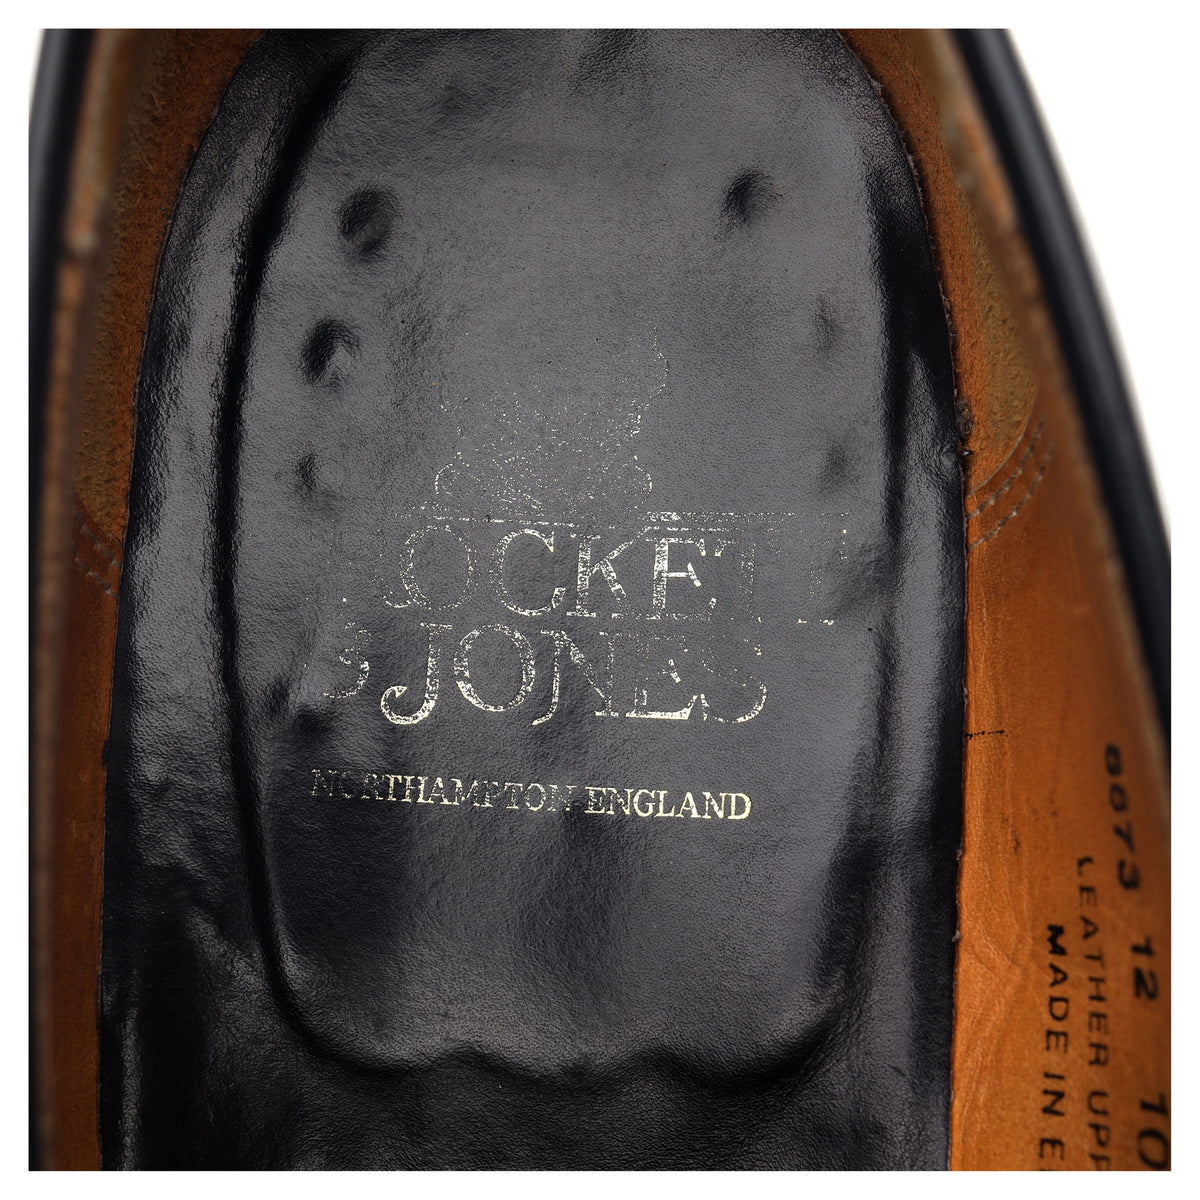 &#39;Eaton&#39; Black Leather Loafers UK 10.5 E